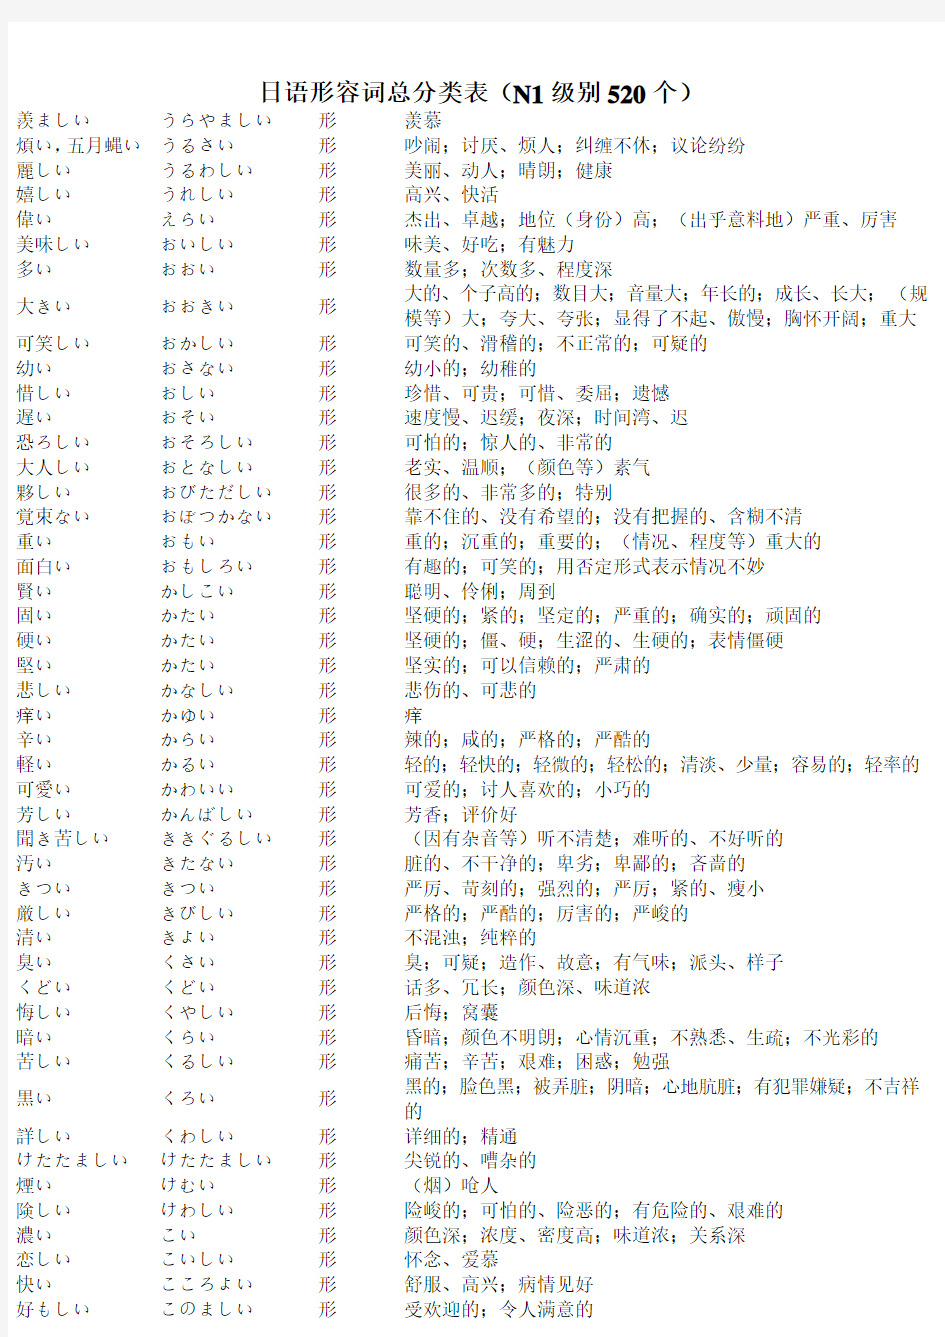 日语形容词汇总分类表(N1级别,包括N1-N4所有形容词)